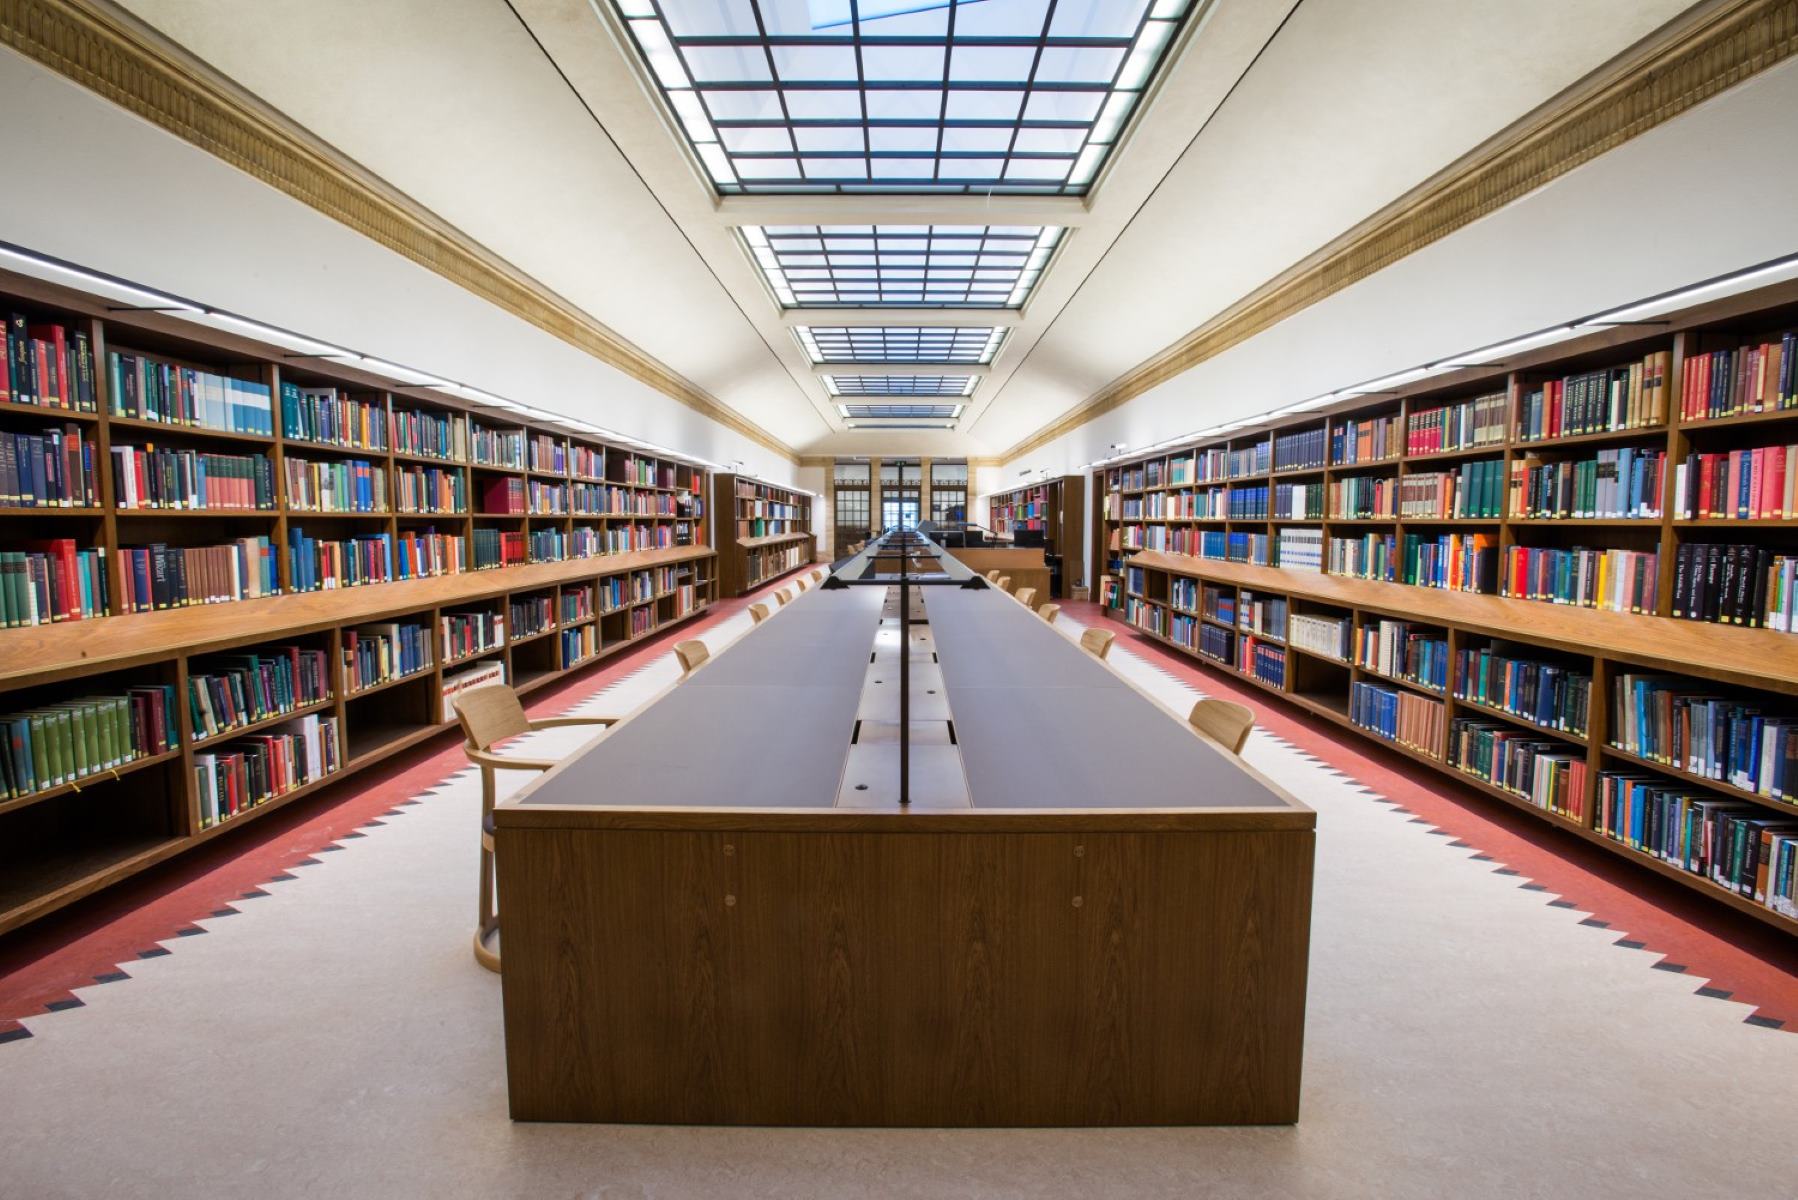 Common library. Оксфордский университет библиотека. Йельский университет библиотека. Красивая библиотека. Красивые читальные залы.